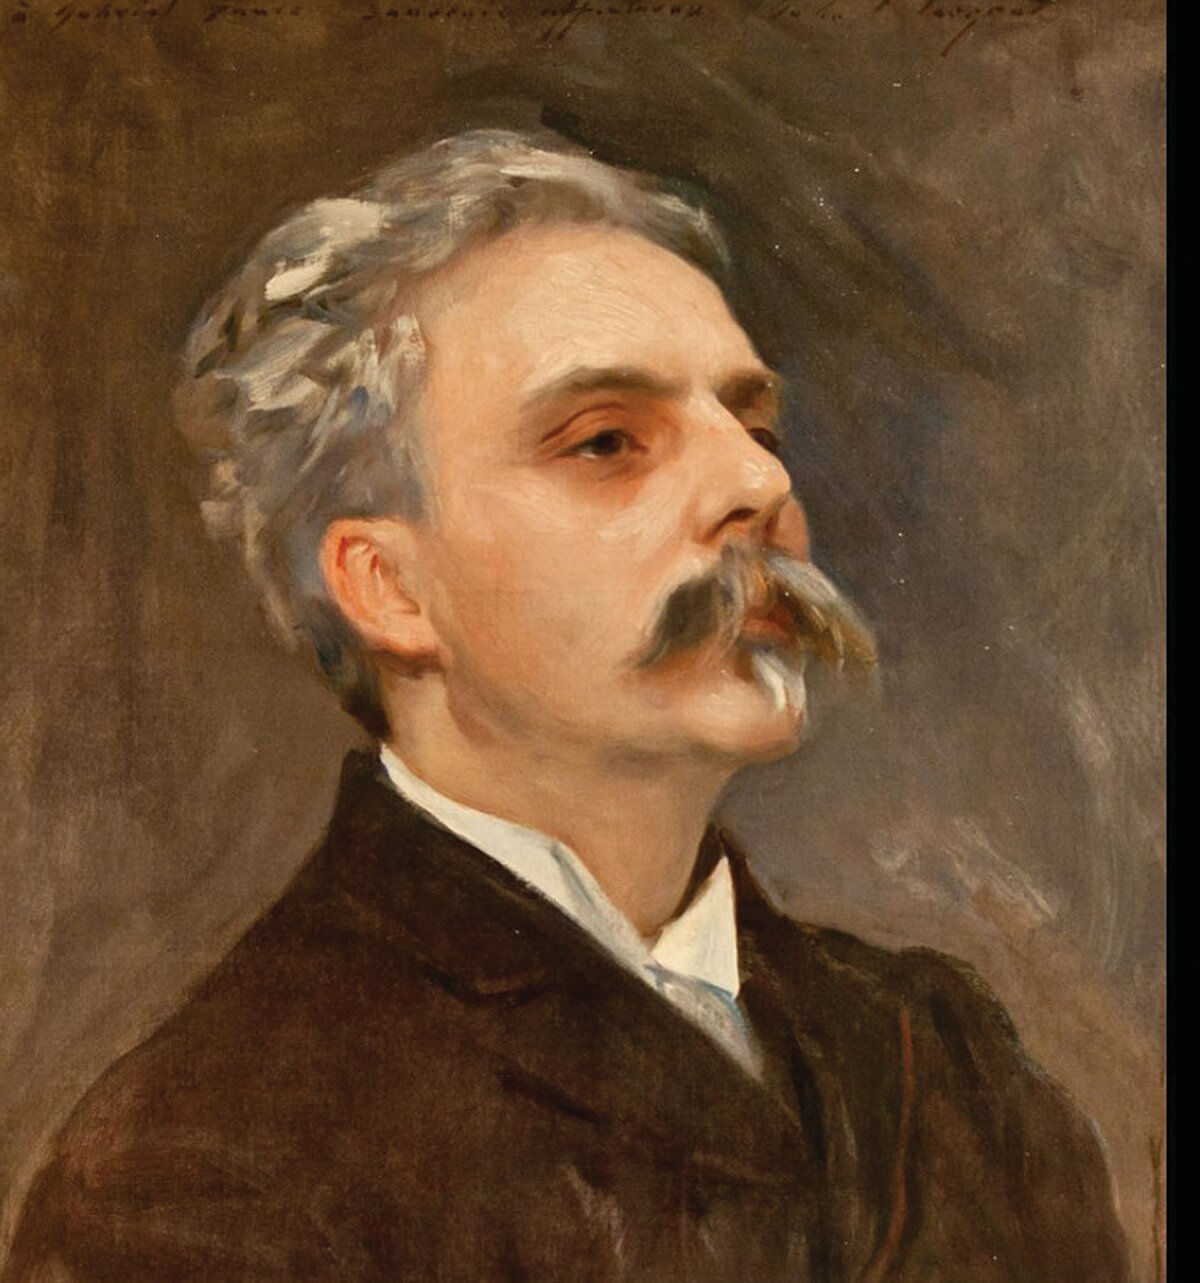 Gabriel Faure, 1845-1924, portrait by John Singer Sargent circa 1889. Exhibited at the Musée de la musique in Paris.